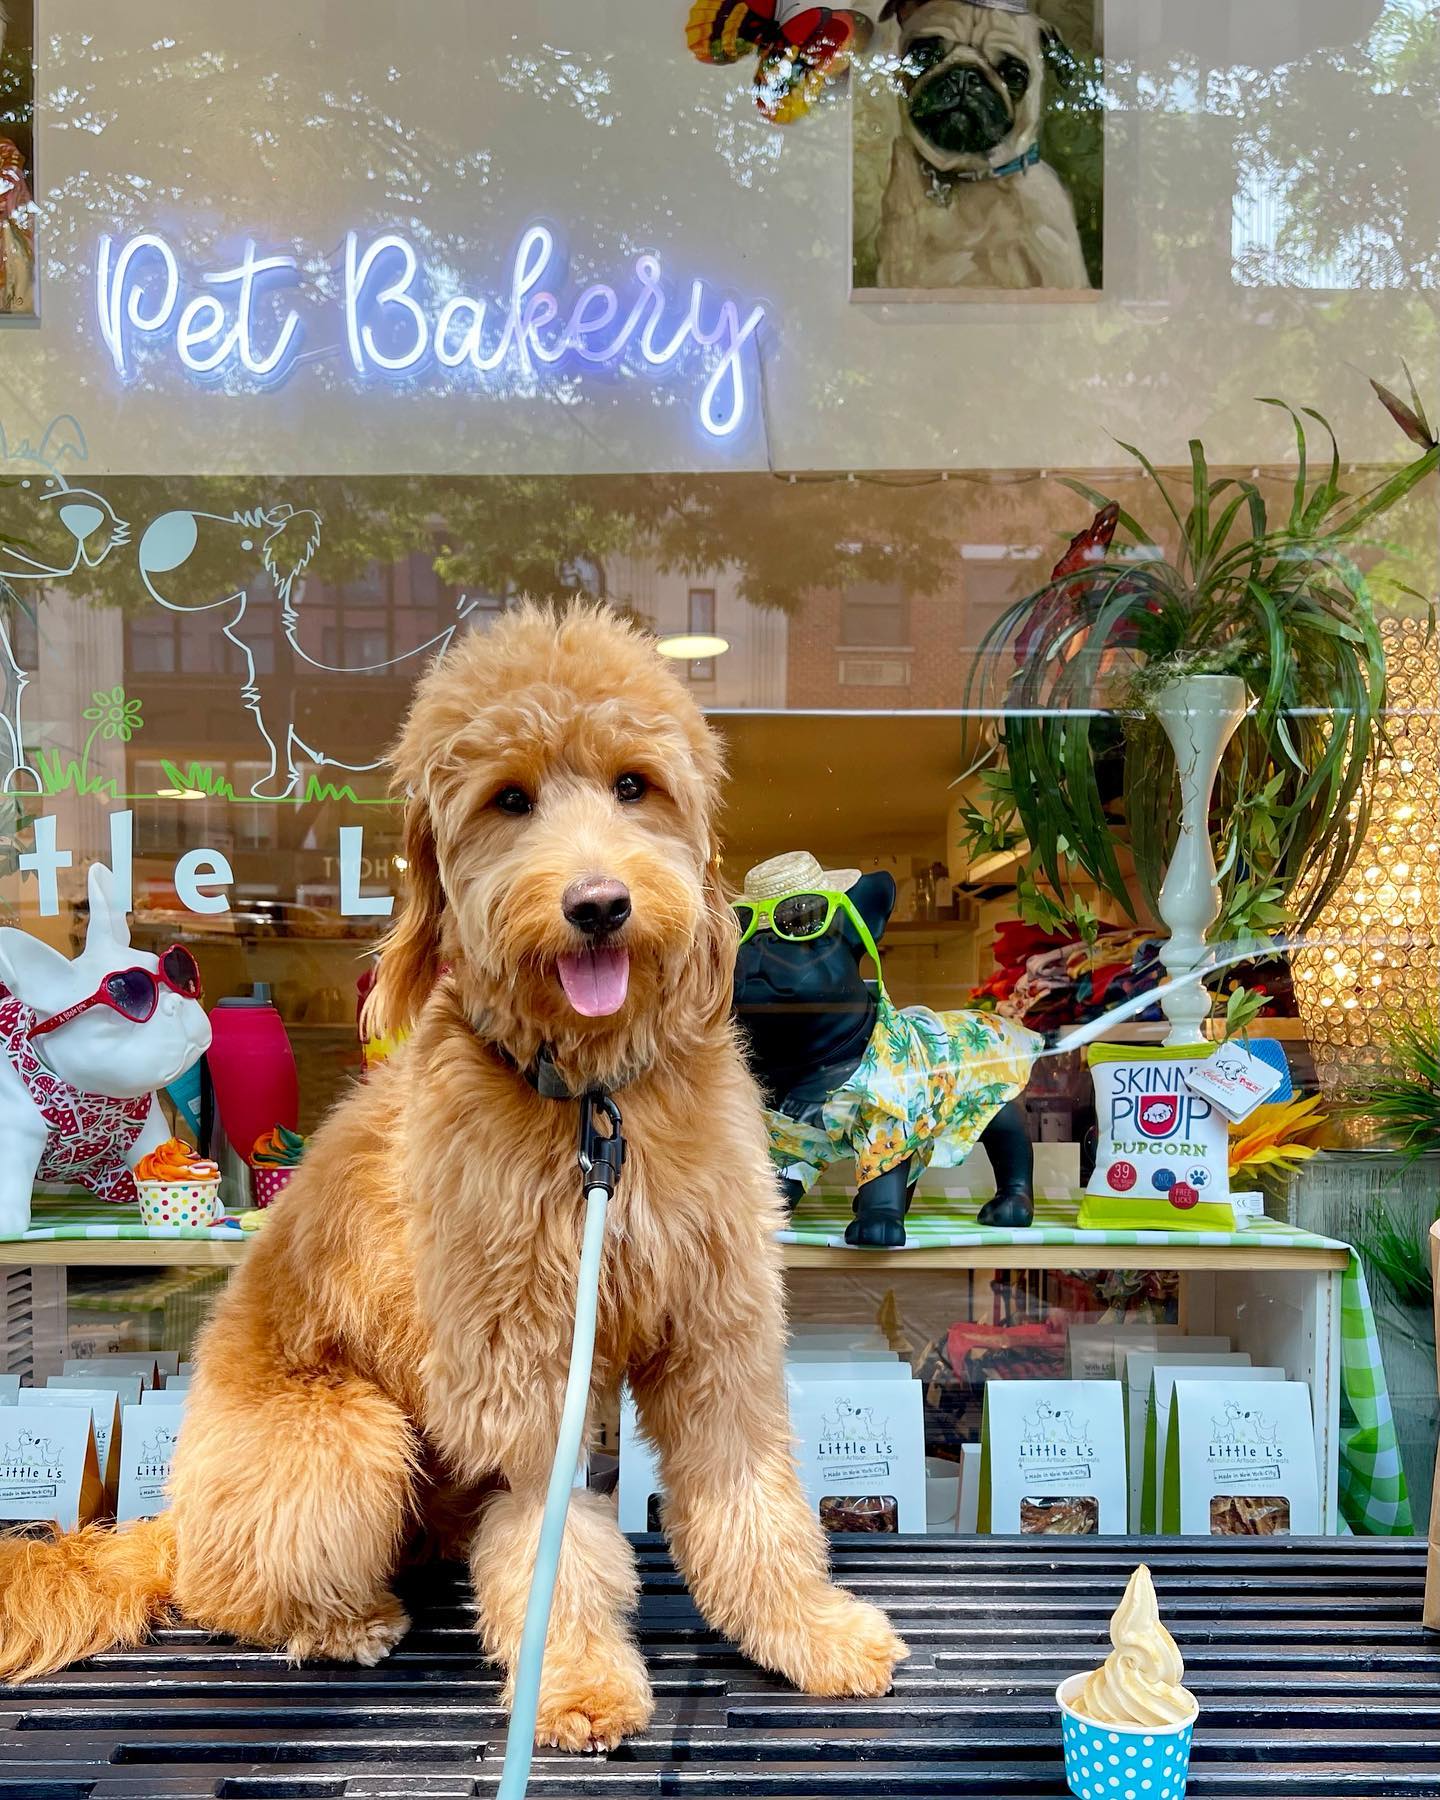 Little L's Pet Bakery & Boutique